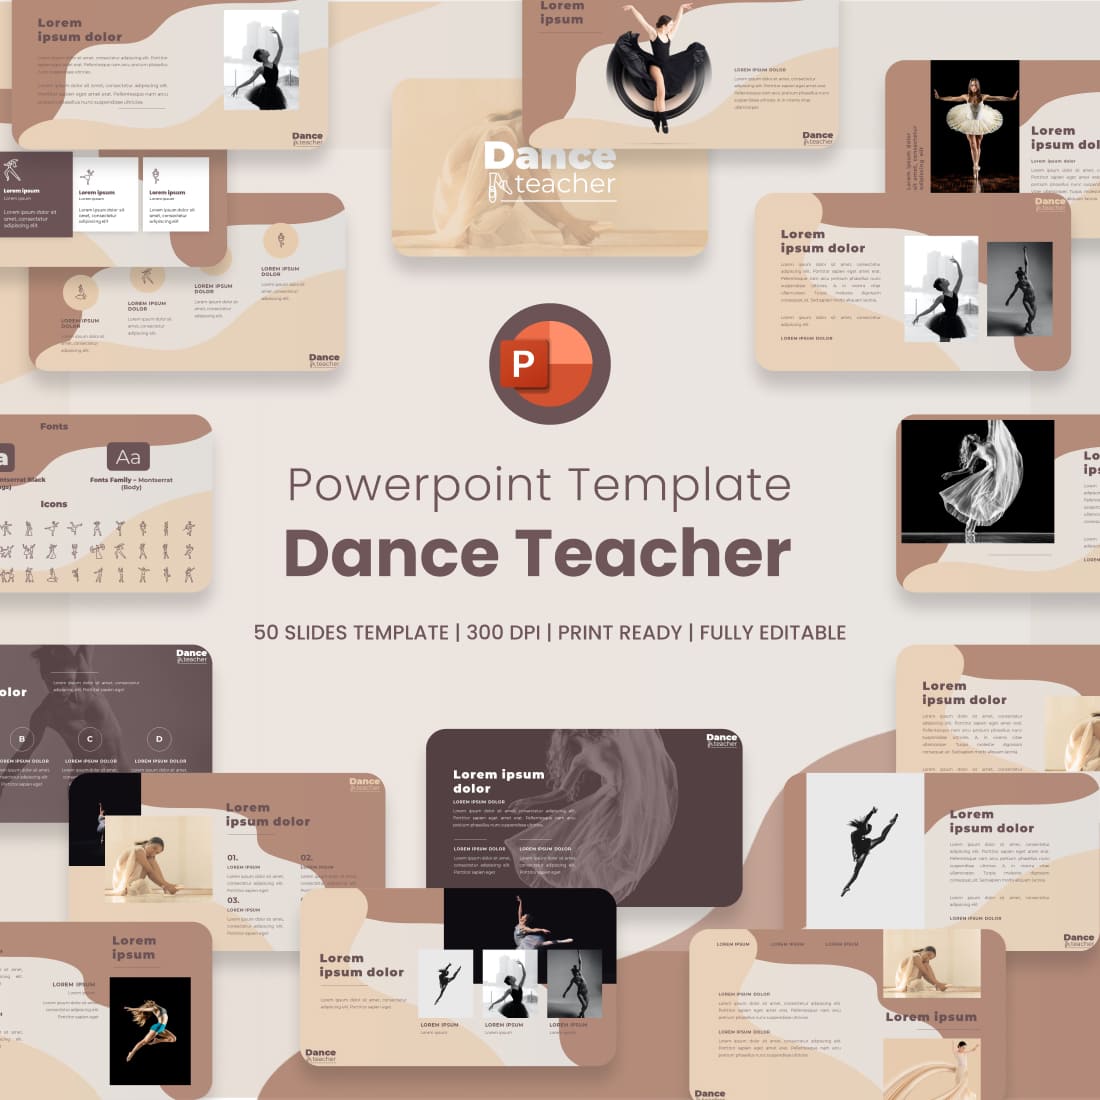 Danceteacher powerpoint template main cover.